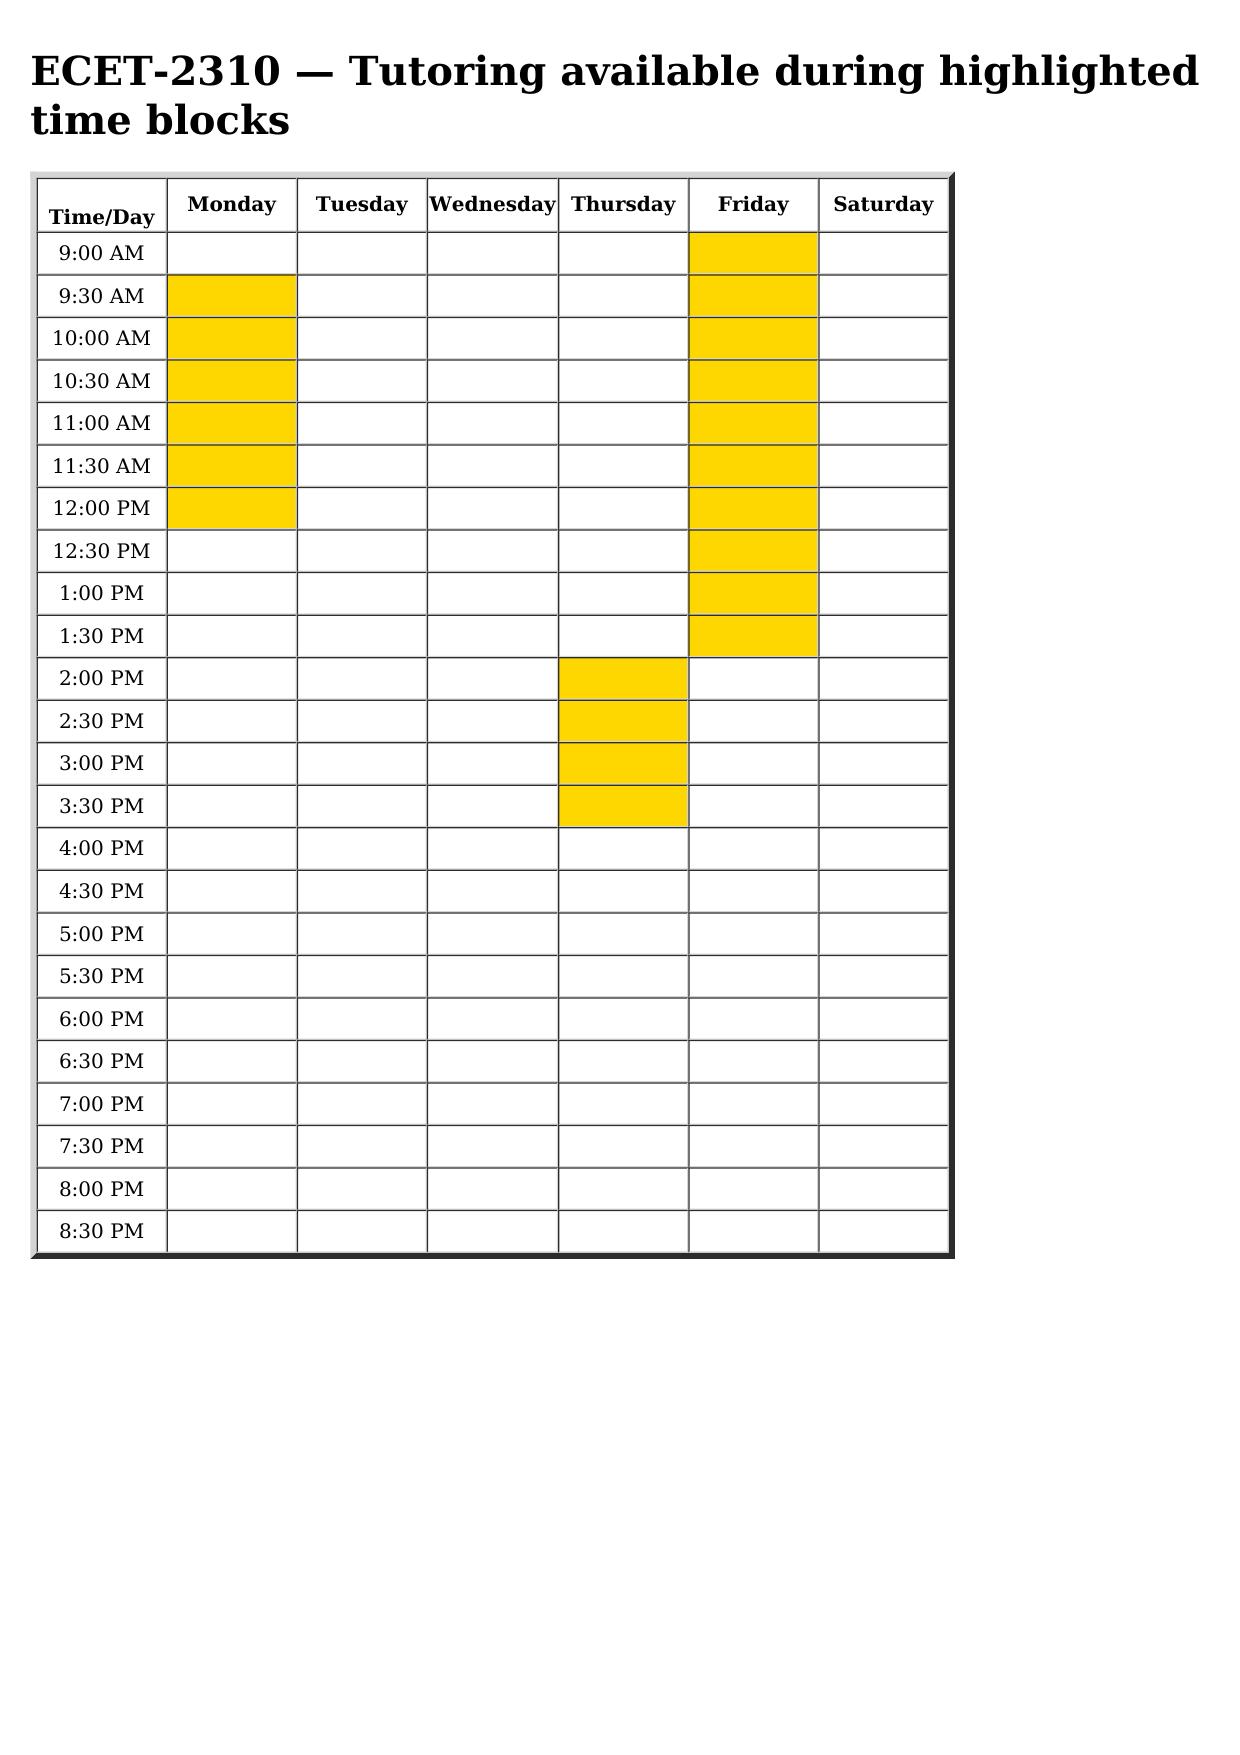 ecet 2310 schedule